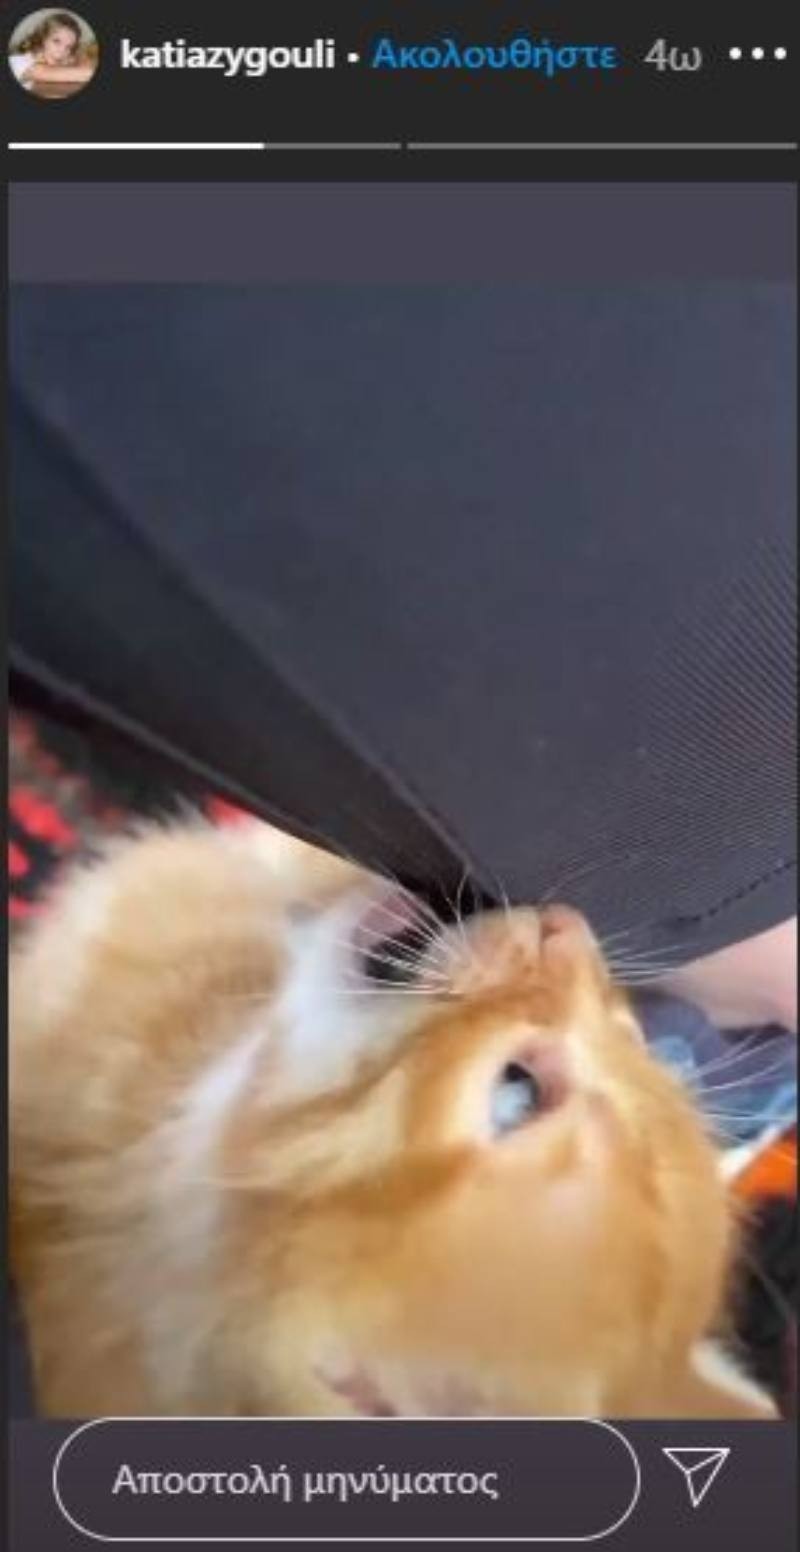 Κάτια Ζυγούλη Σάκης Ρουβάς γατάκι βίντεο 